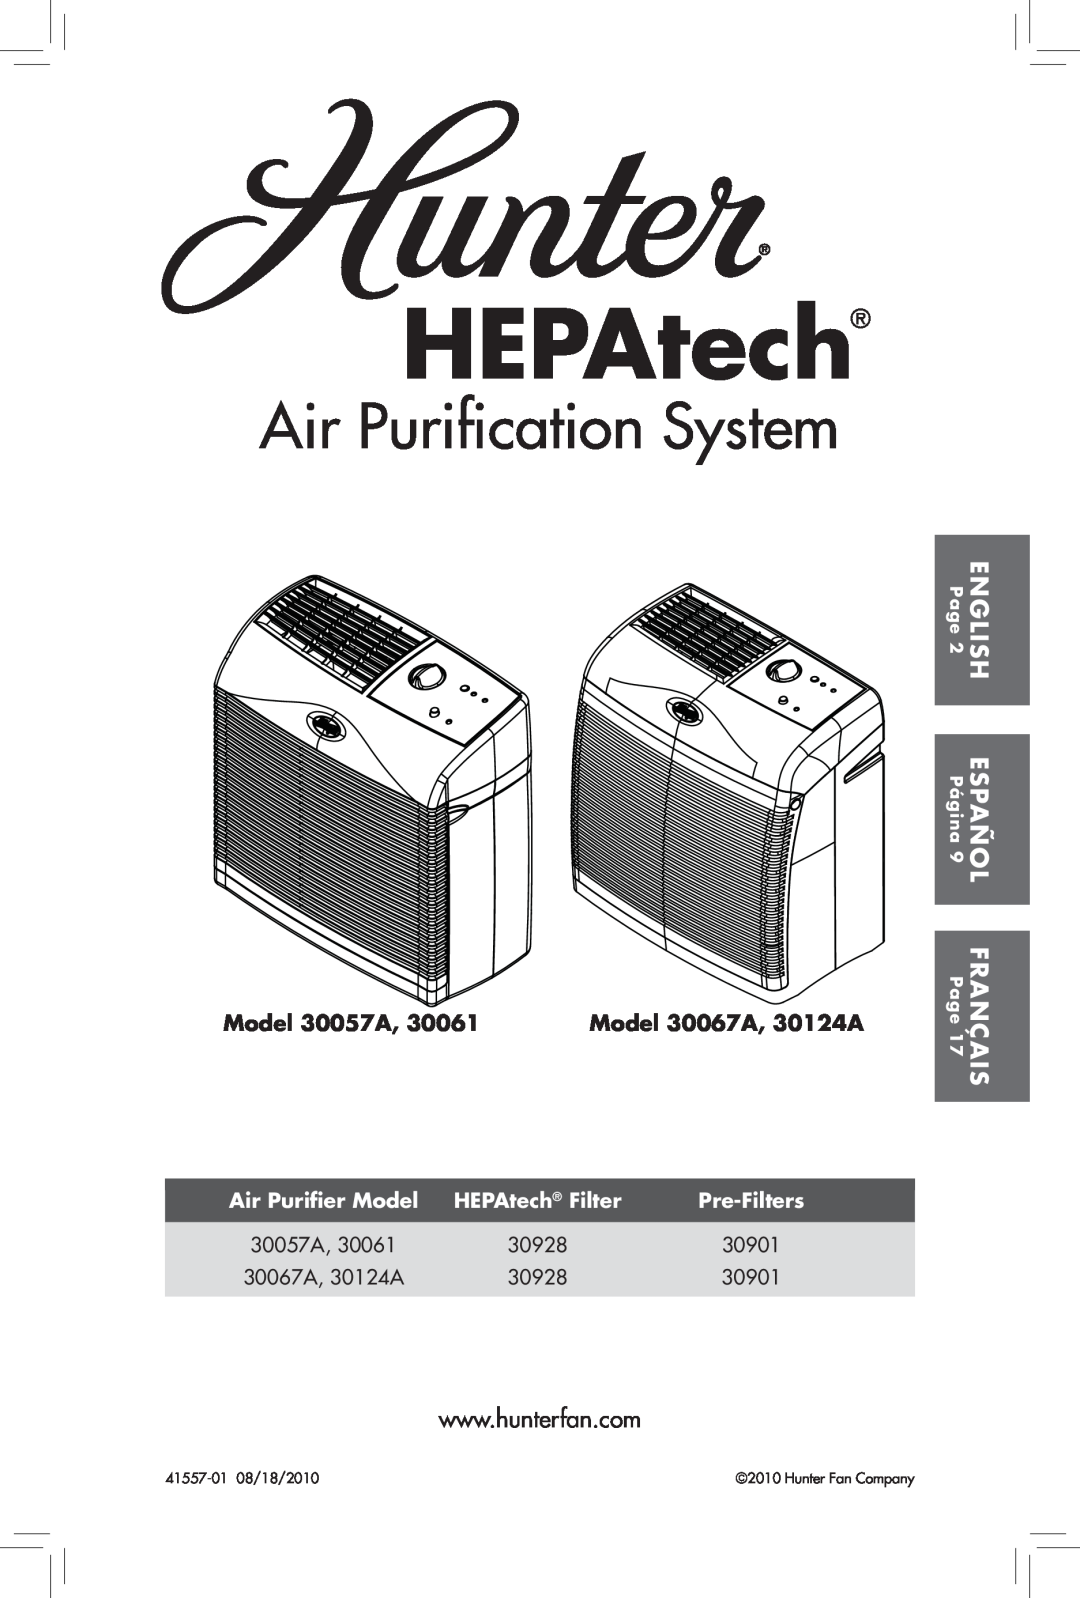 Hunter Fan 30061 manual HEPAtech, Air Purification System, Model 30057A, Model 30067A, 30124A, Air Purifier Model 